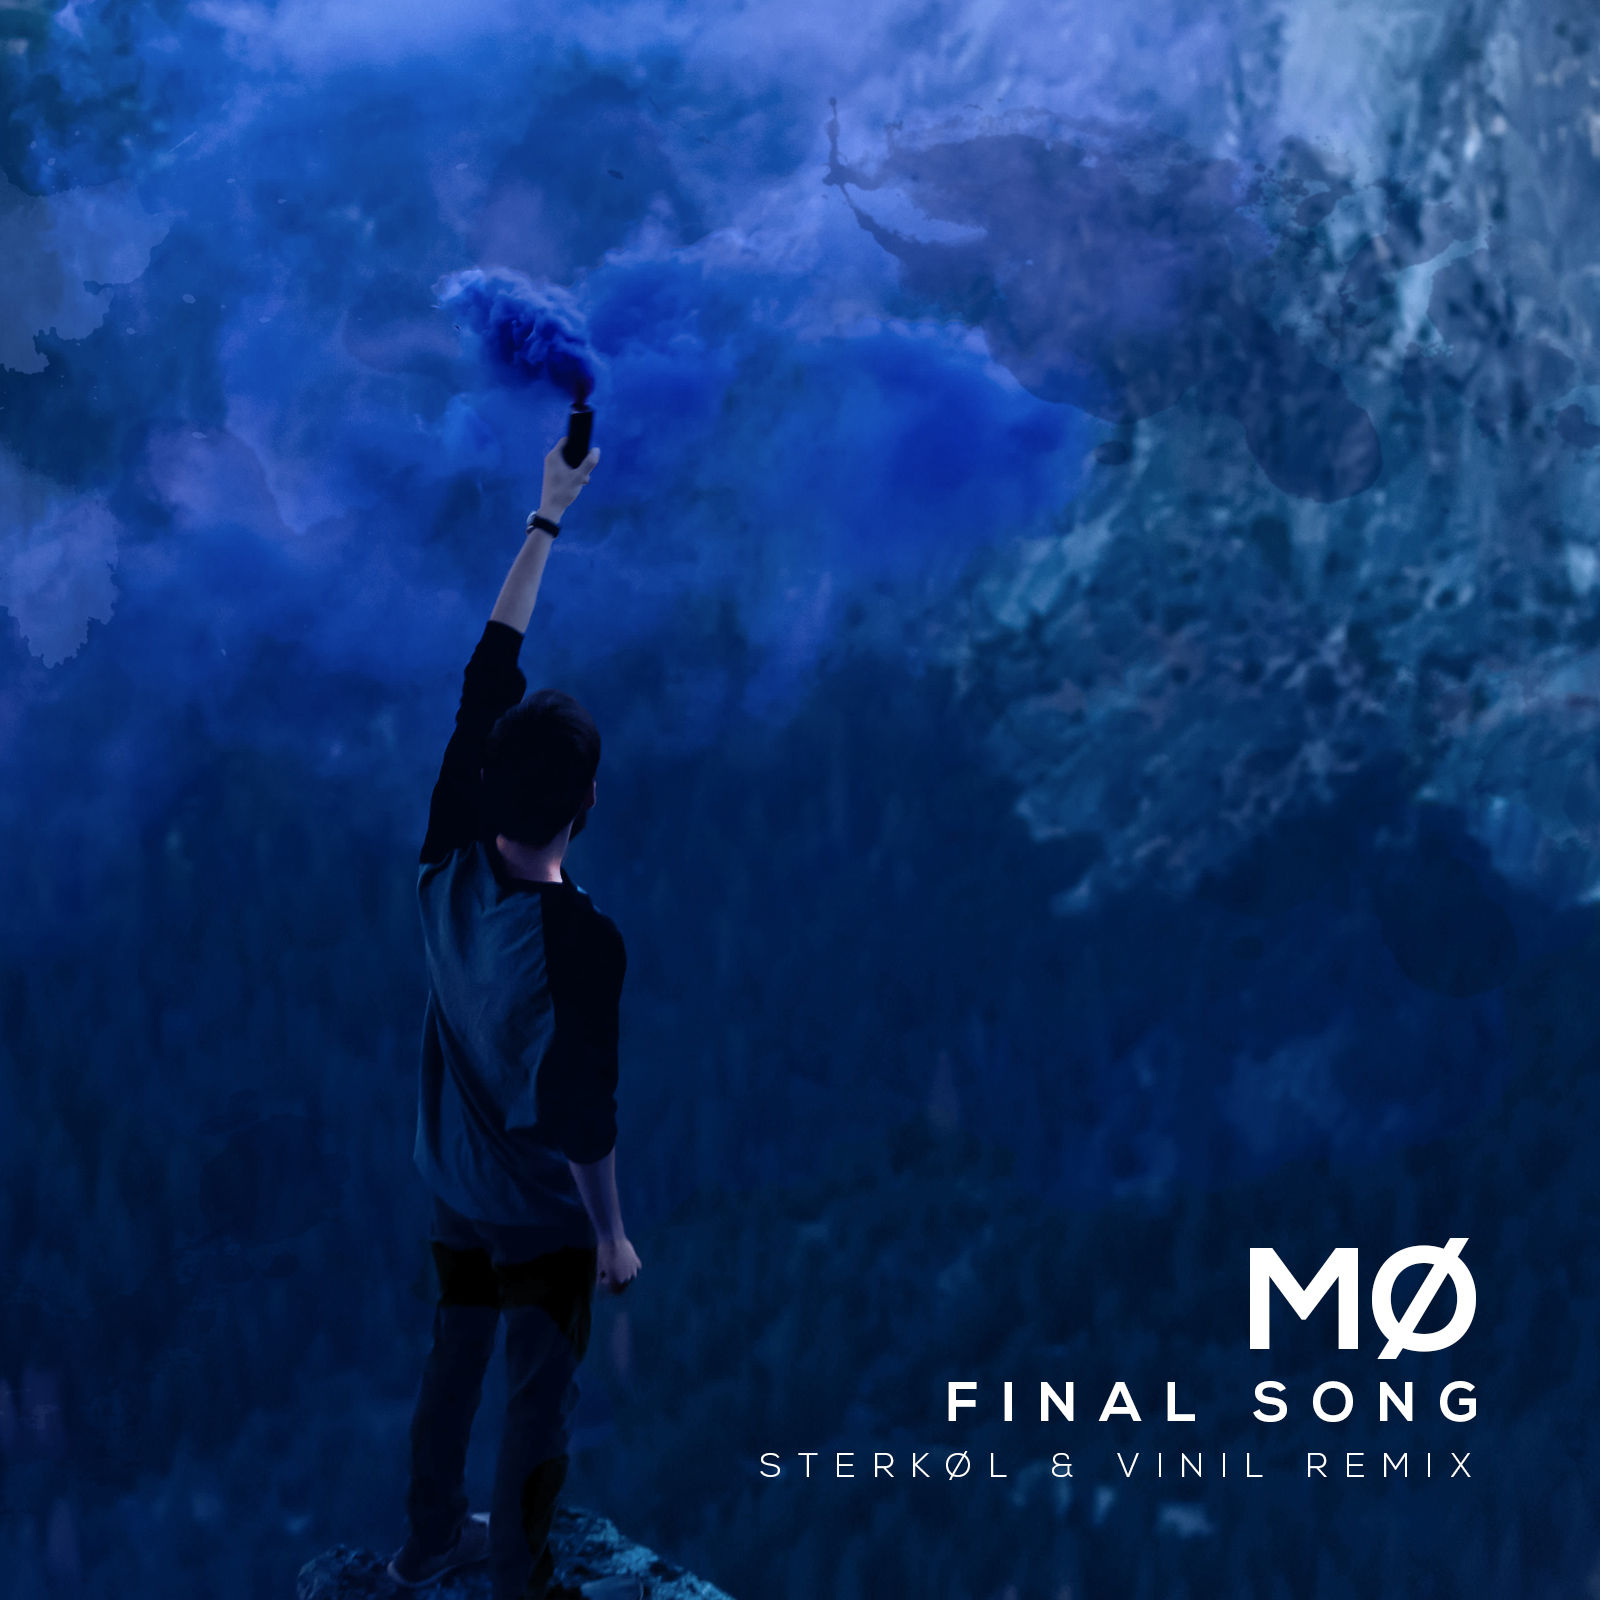 MØ - Final Song (Sterkøl & Vinil Remix) [신남, 밝음, 경쾌]